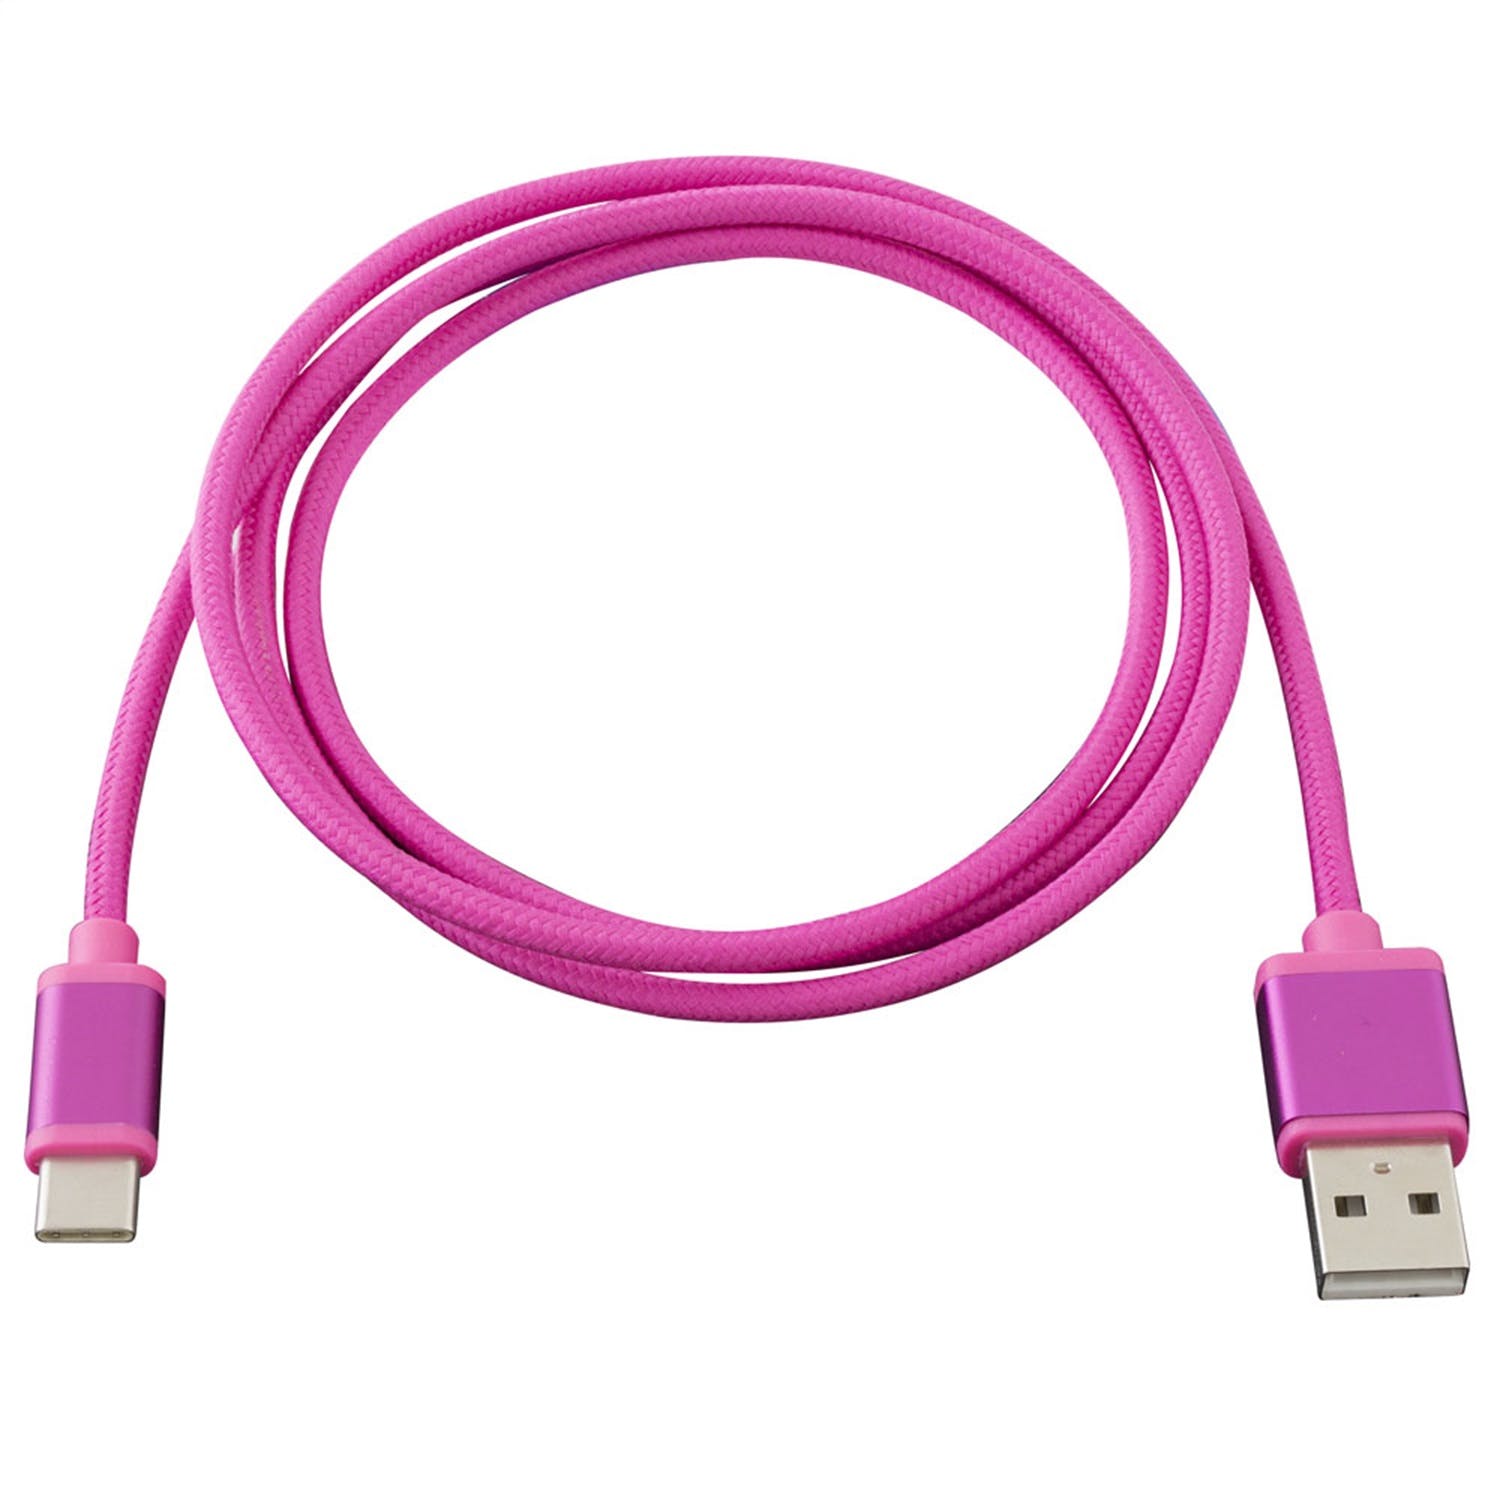 Metra Electronics AX-USBC-PK USB-C Replacement Cable